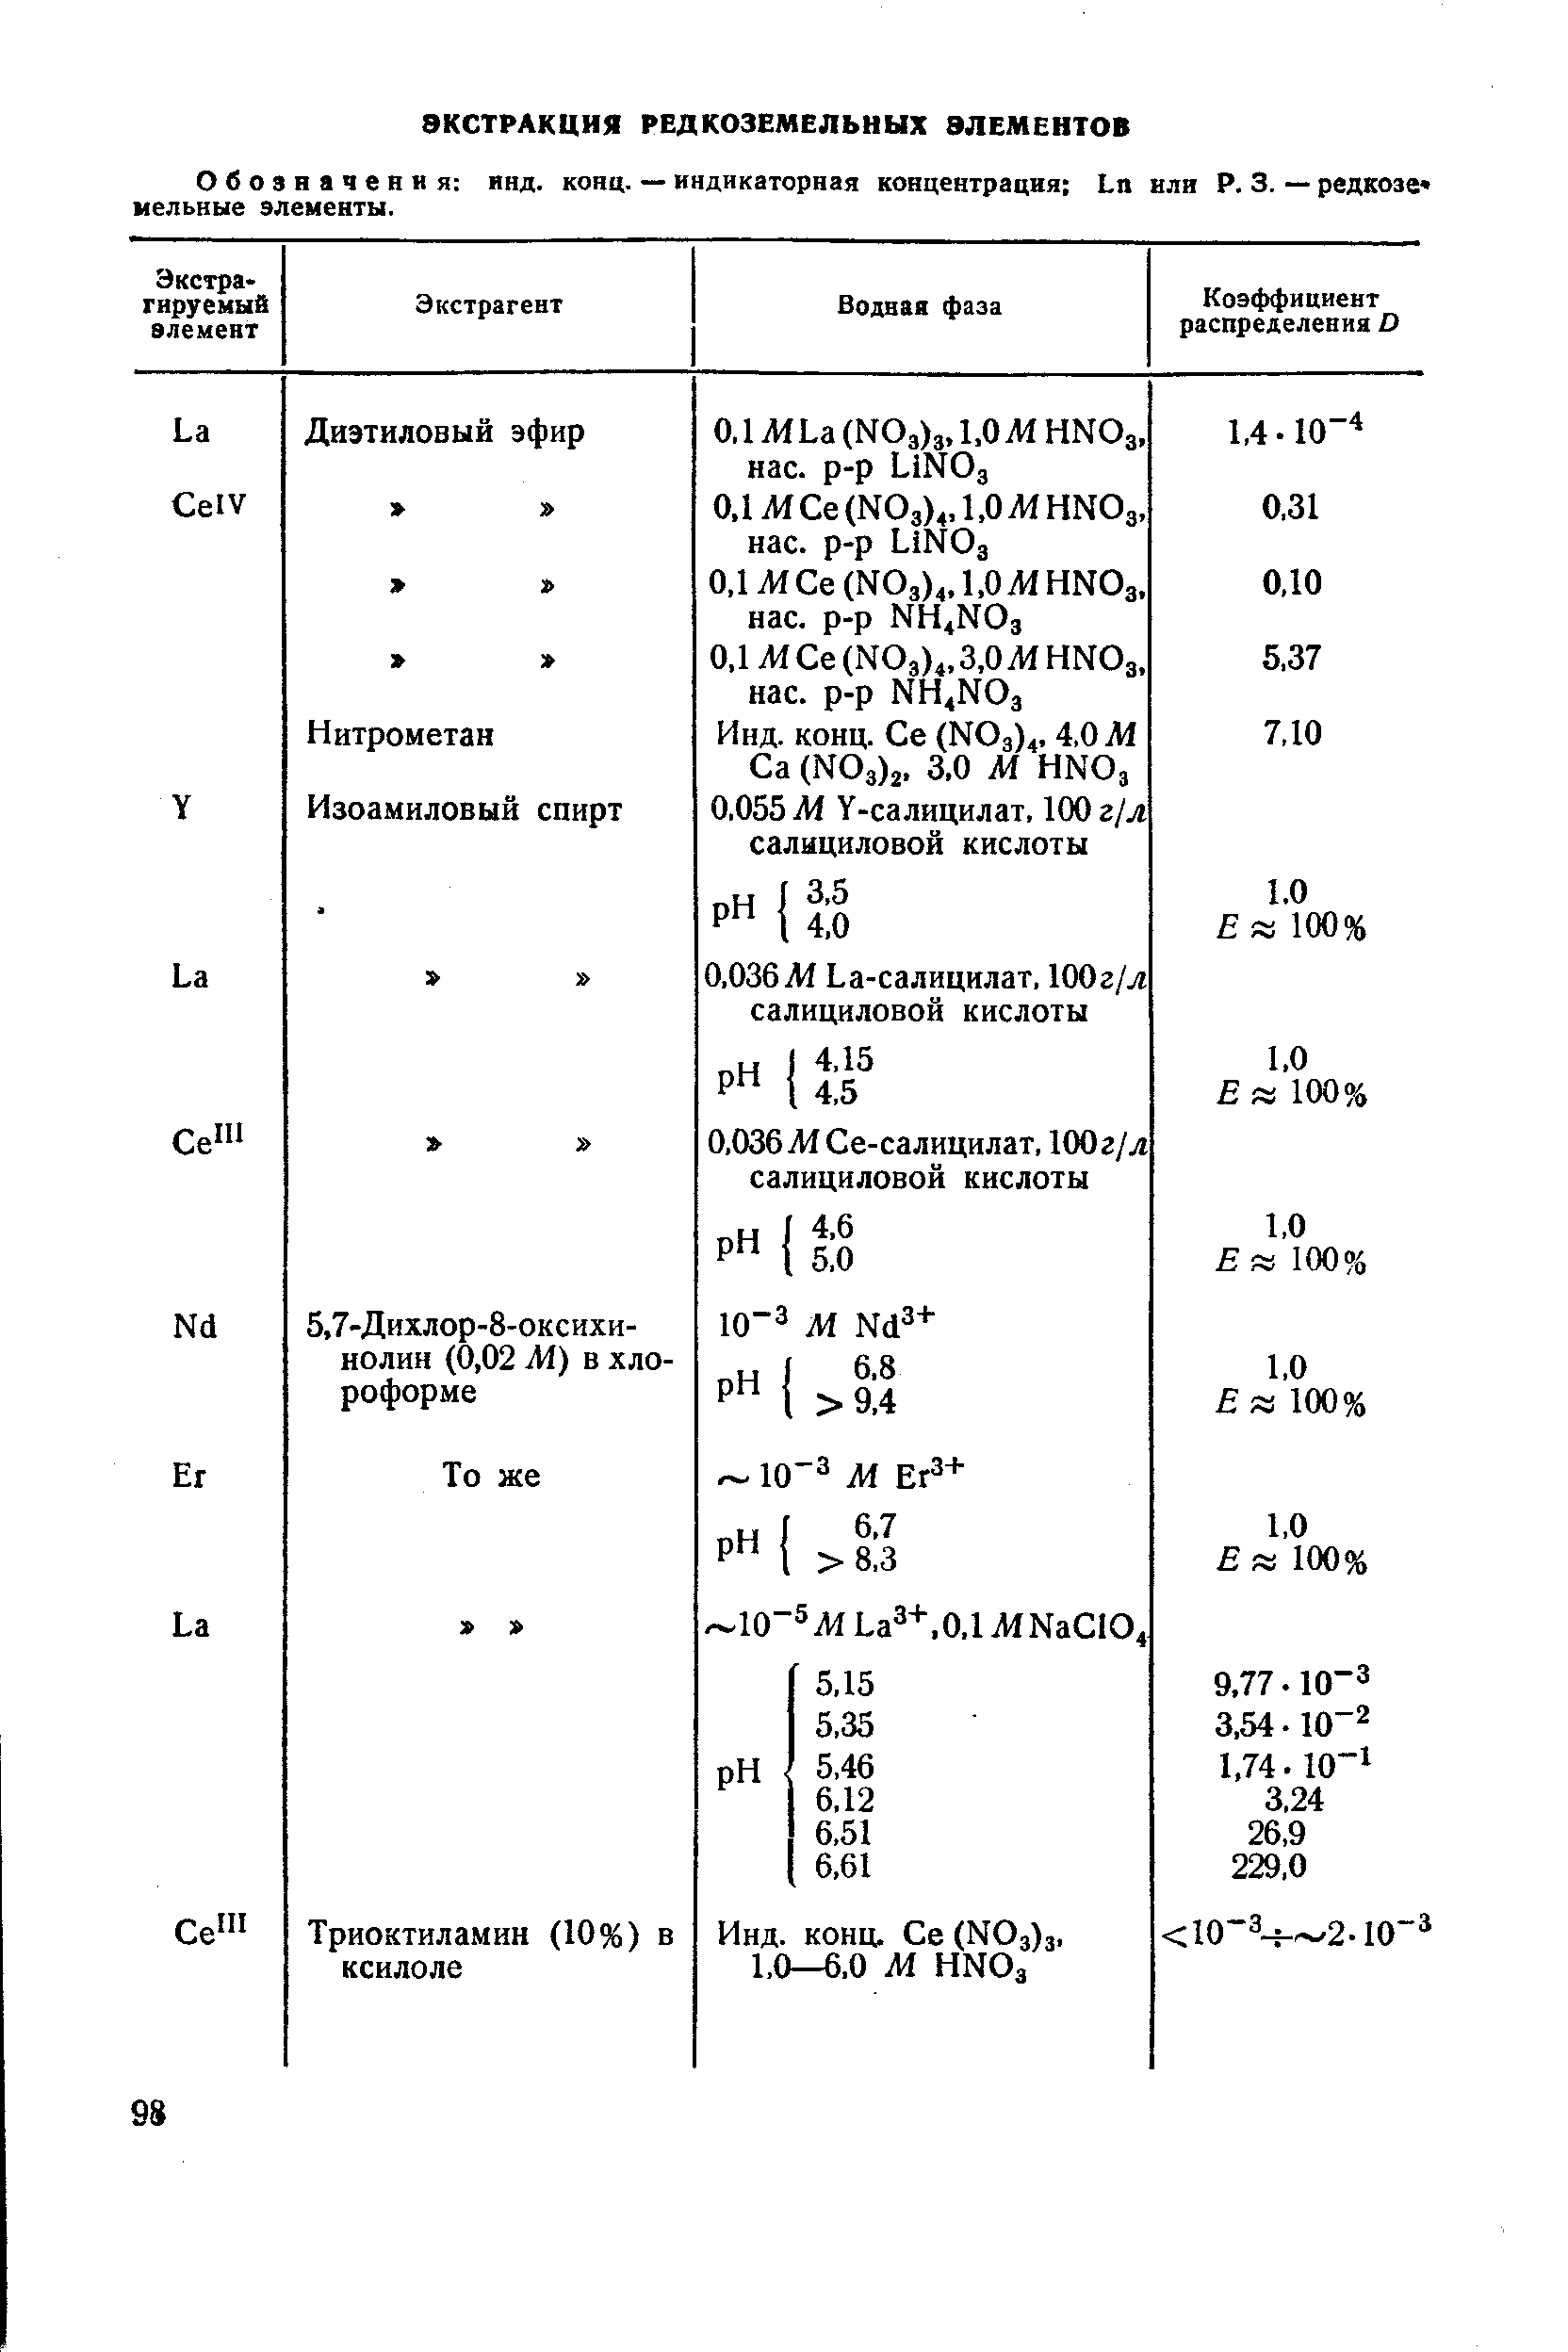 Обозначения инд. конц. — индикаторная концентрация Ьп или Р. 3. — редкозе мельные элементы.